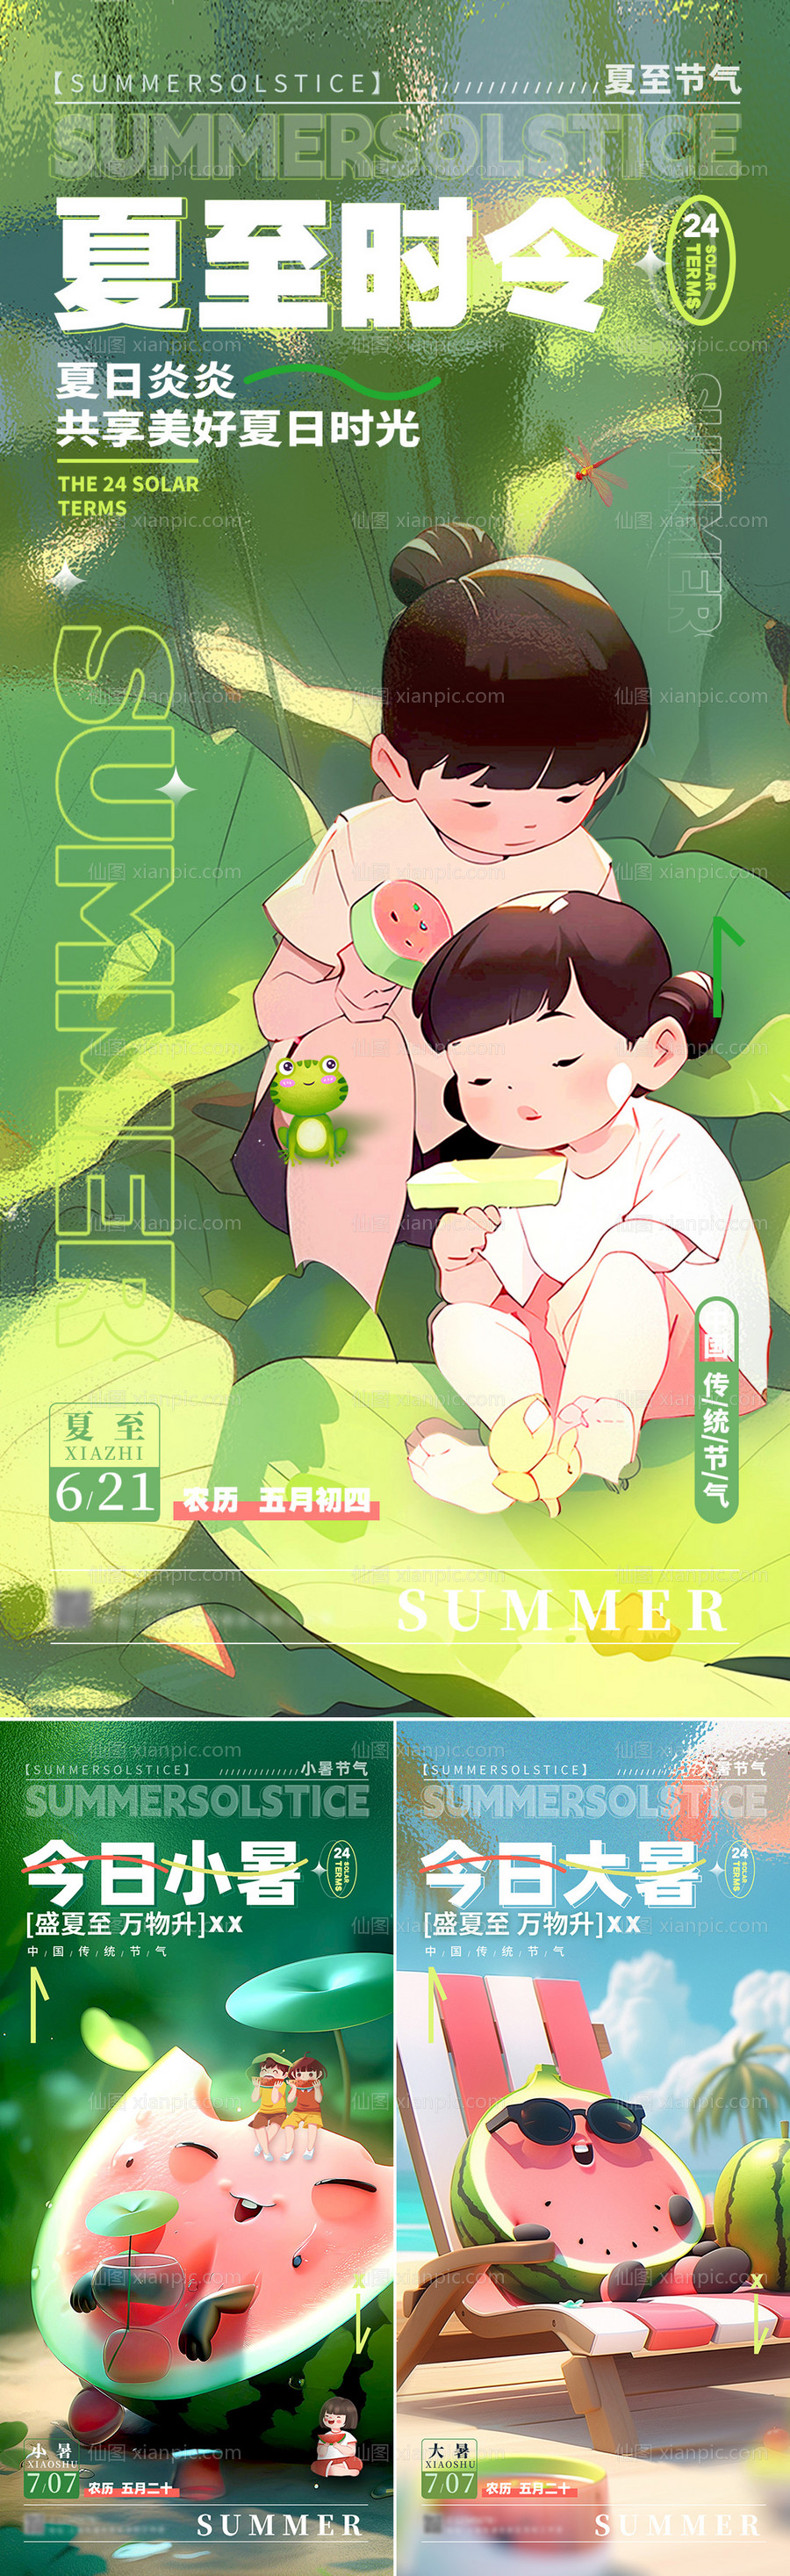 素材乐-夏至小暑大暑节气海报